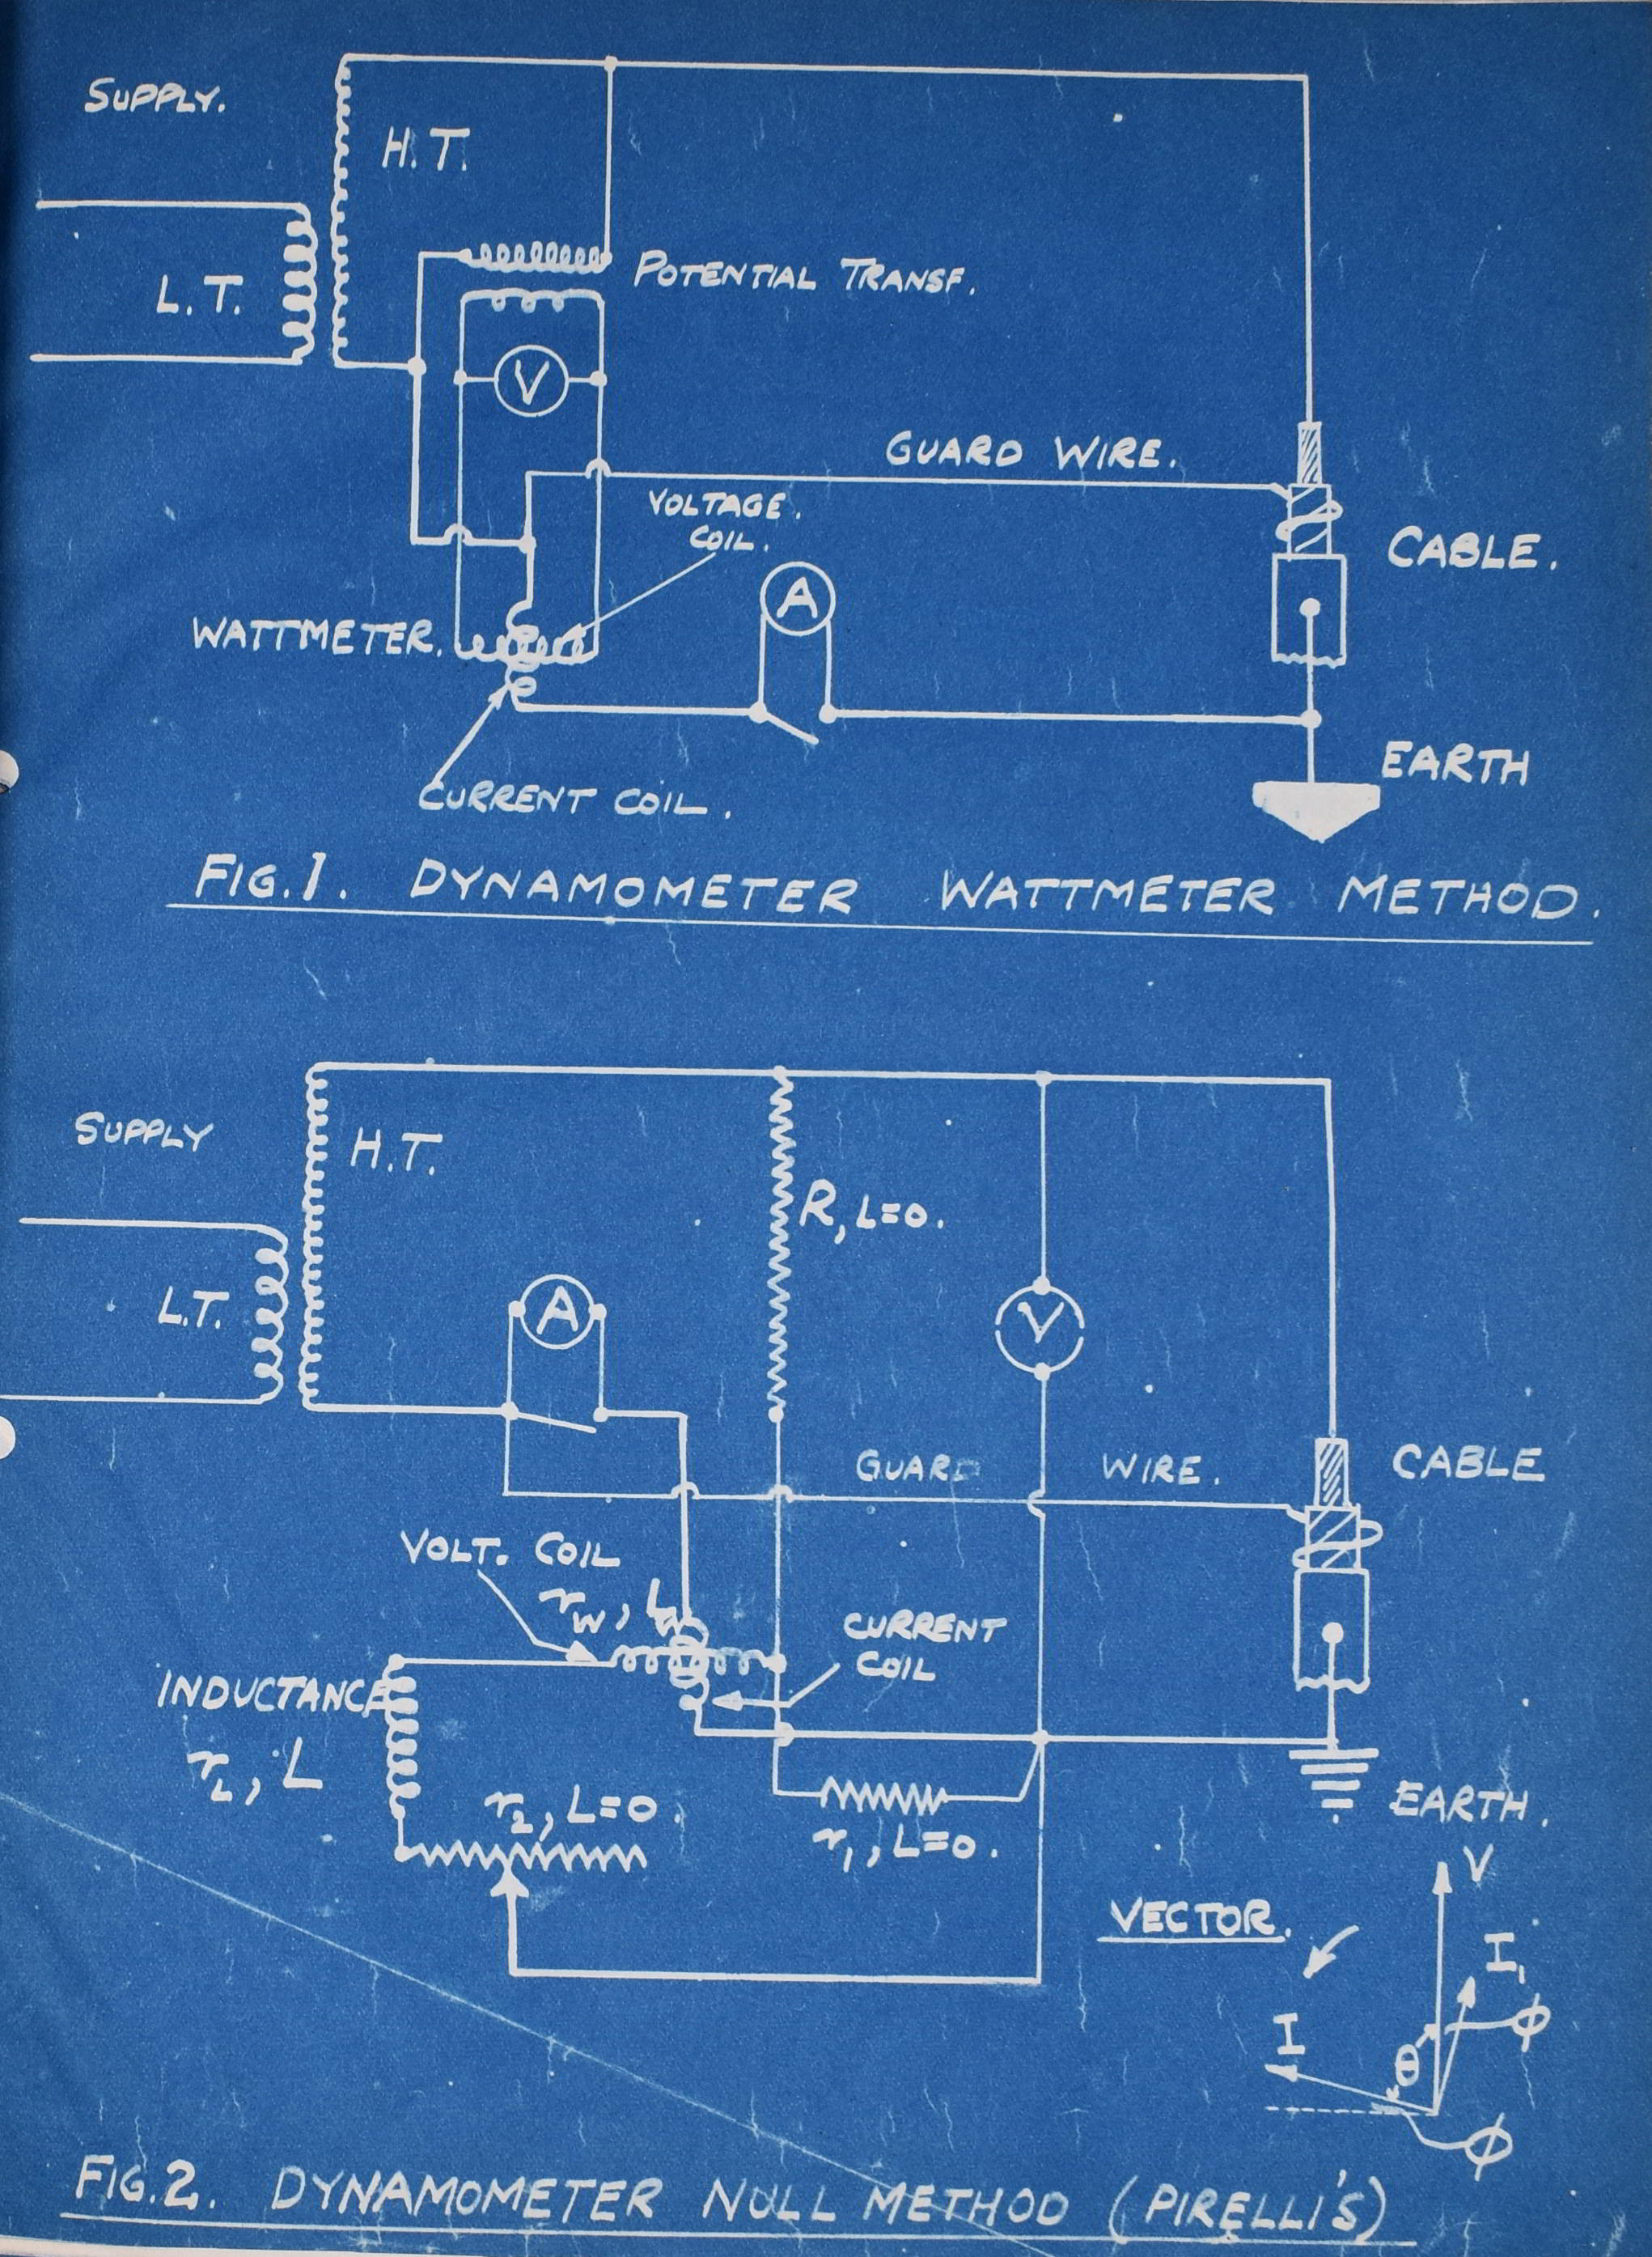 Diagram showing wiring